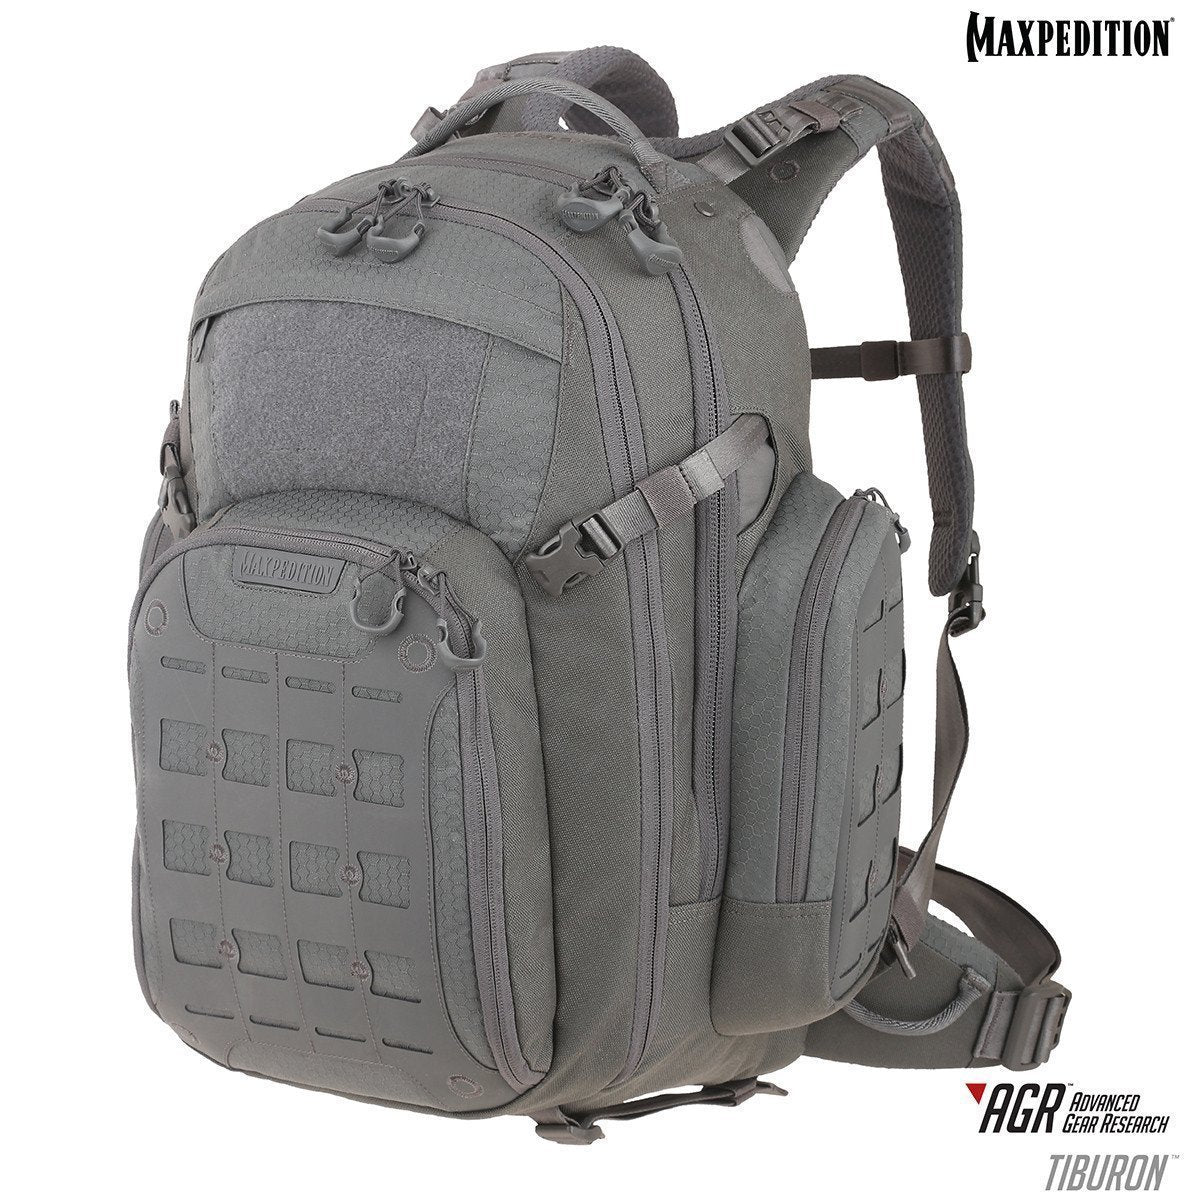 Maxpedition Tiburon Backpack 34L Gray Tactical Distributors Ltd New Zealand